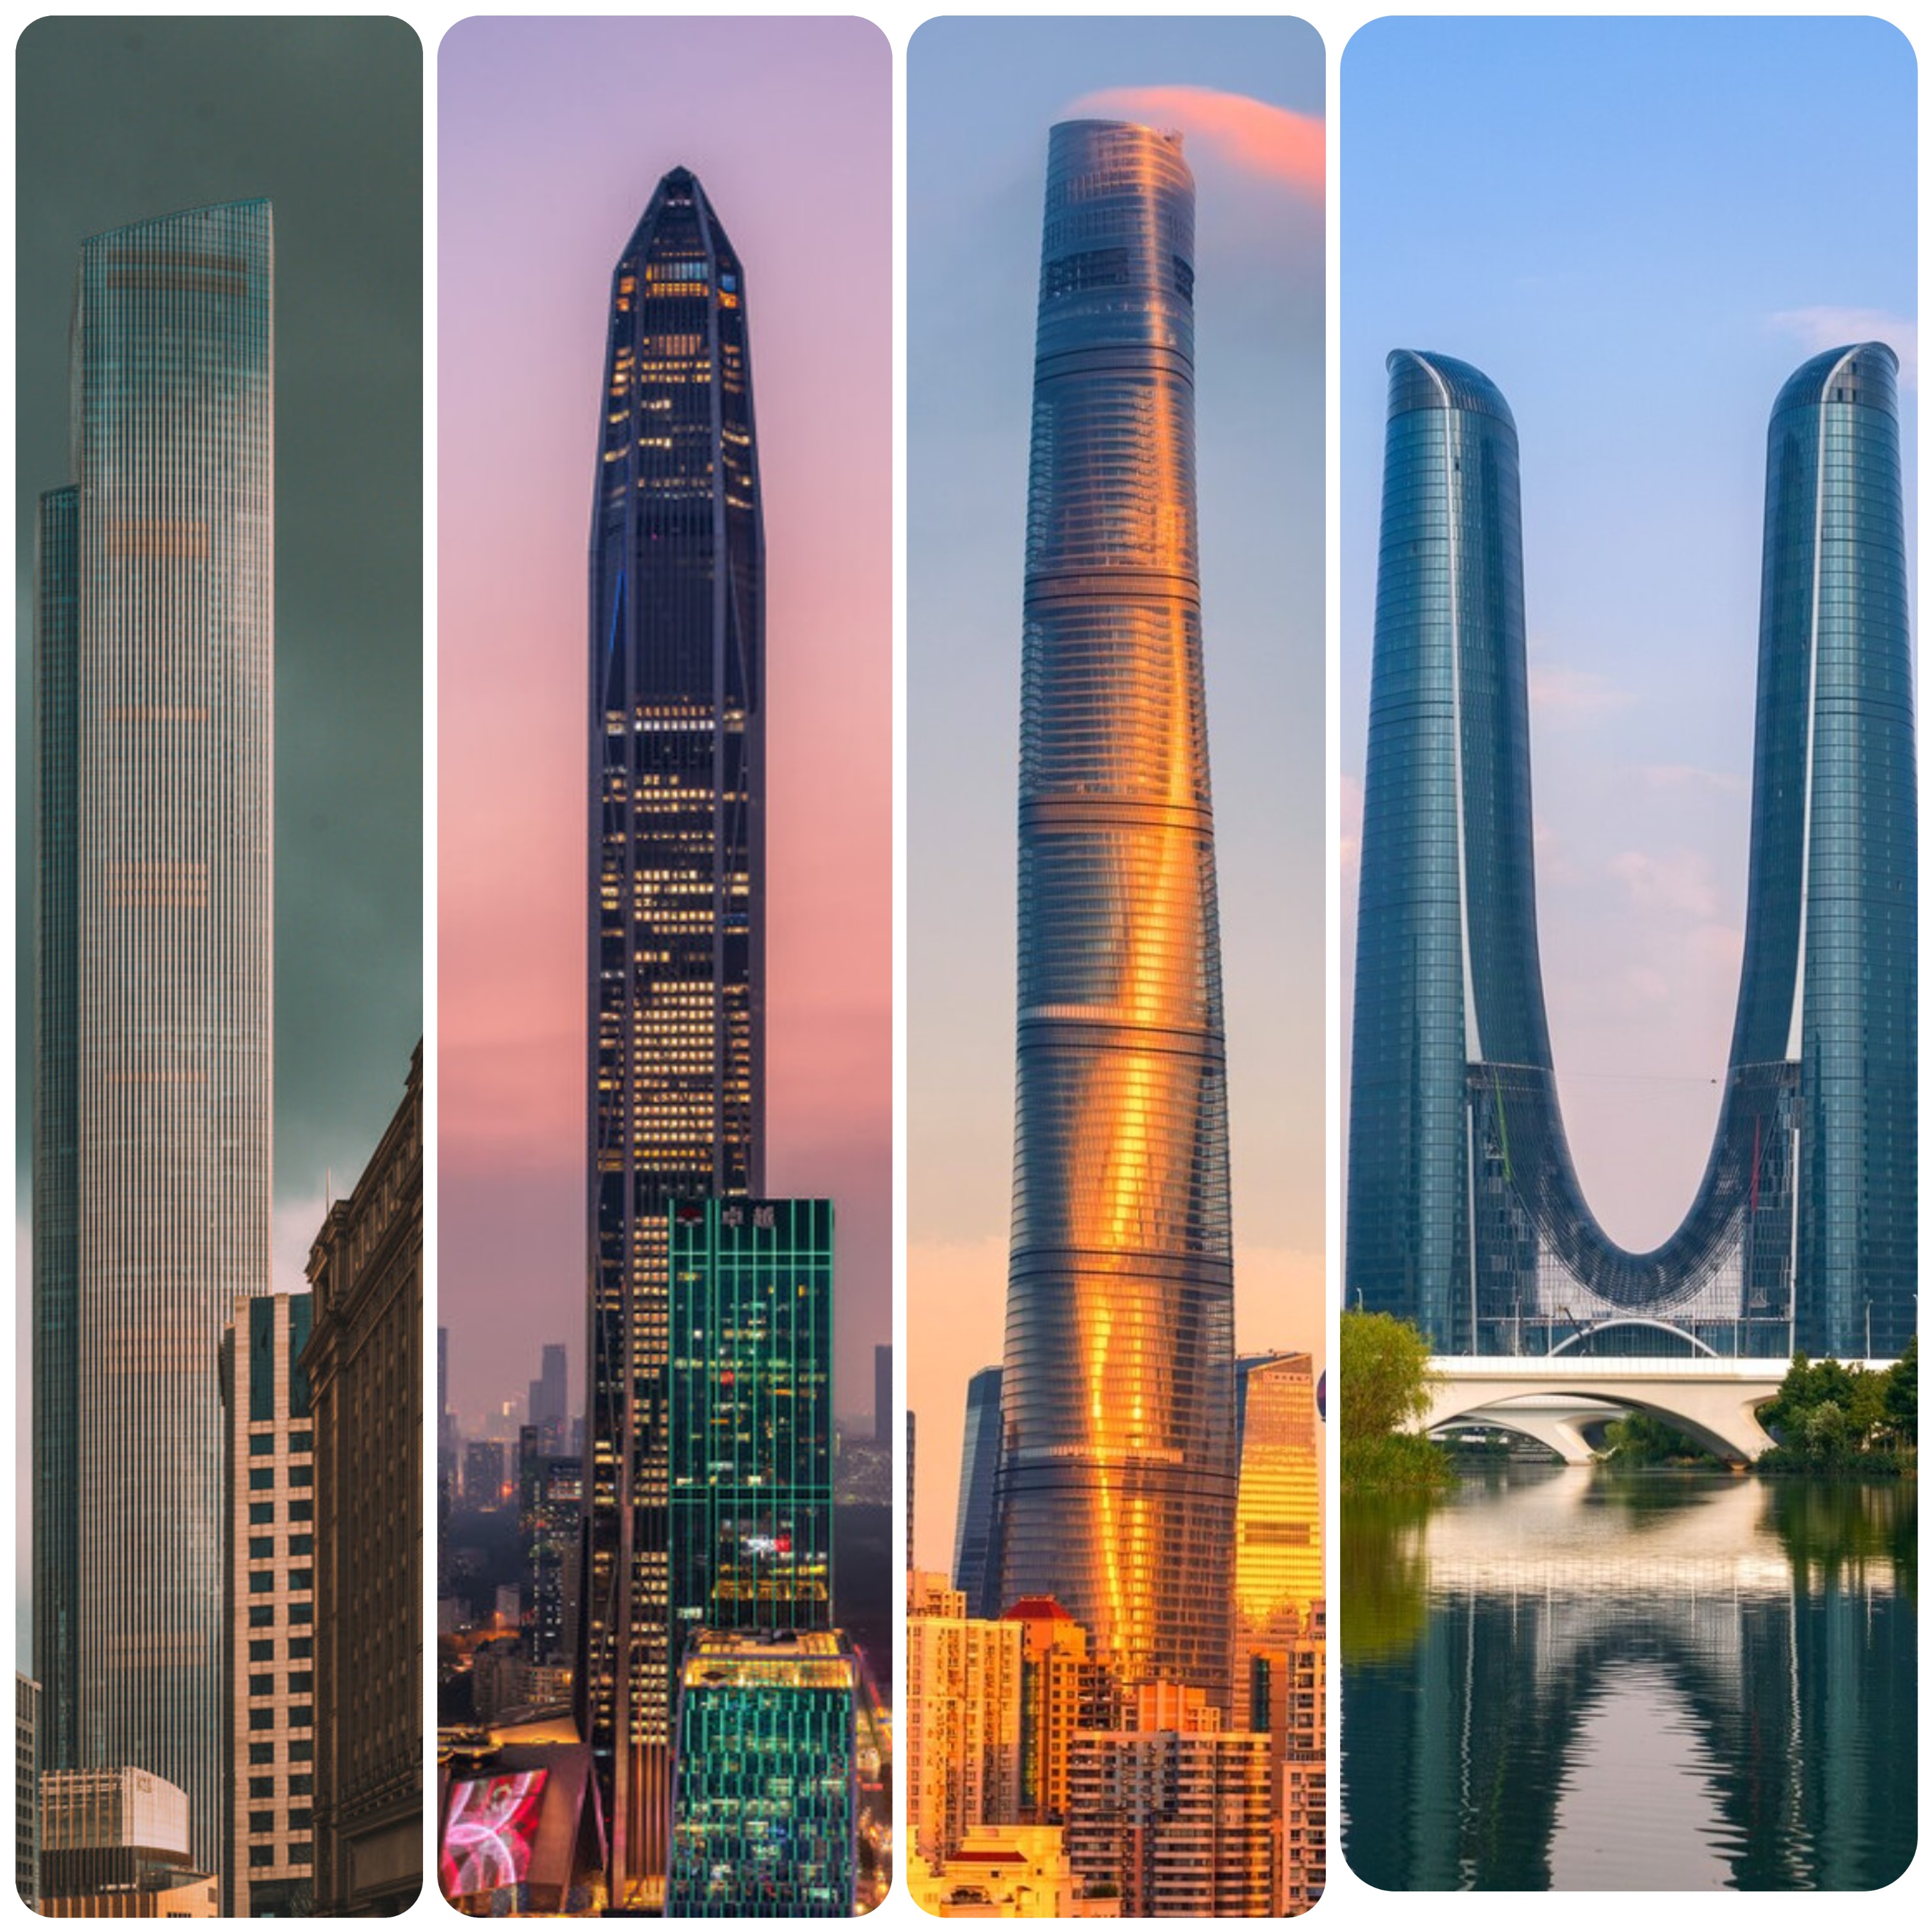 世界最高建筑 世界十大著名建筑